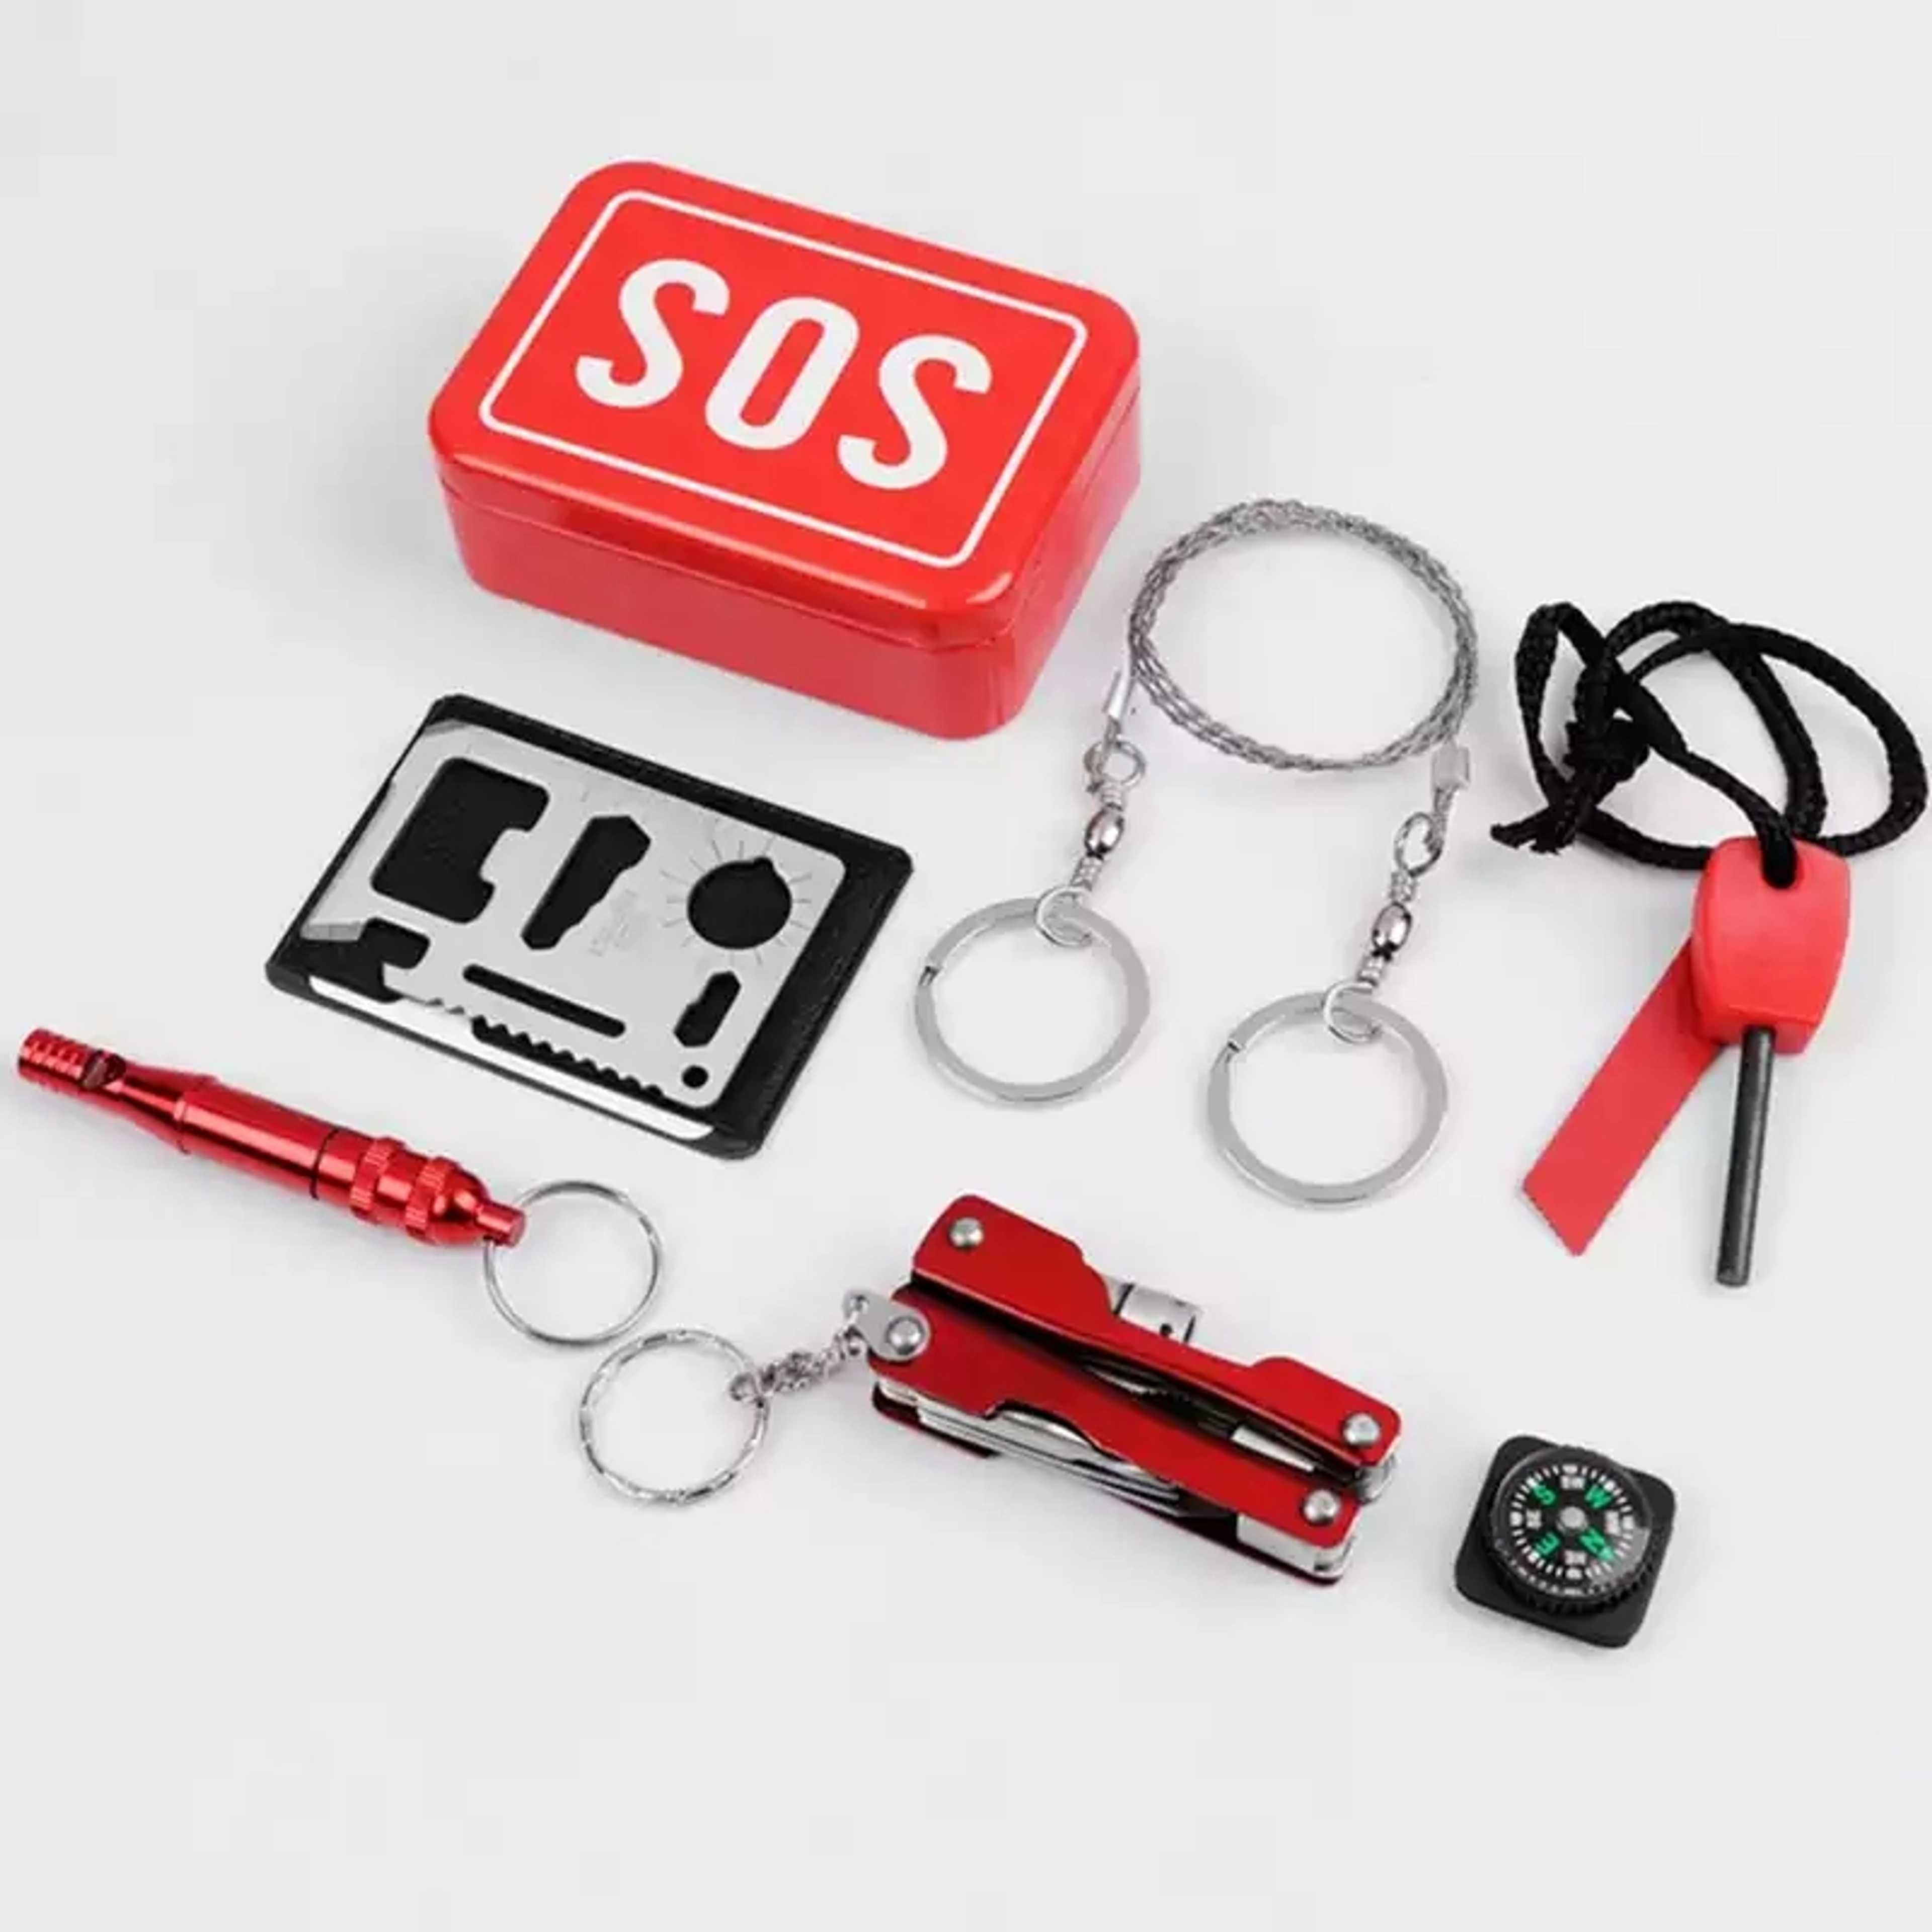 6-in-1 SOS Survival Kit.